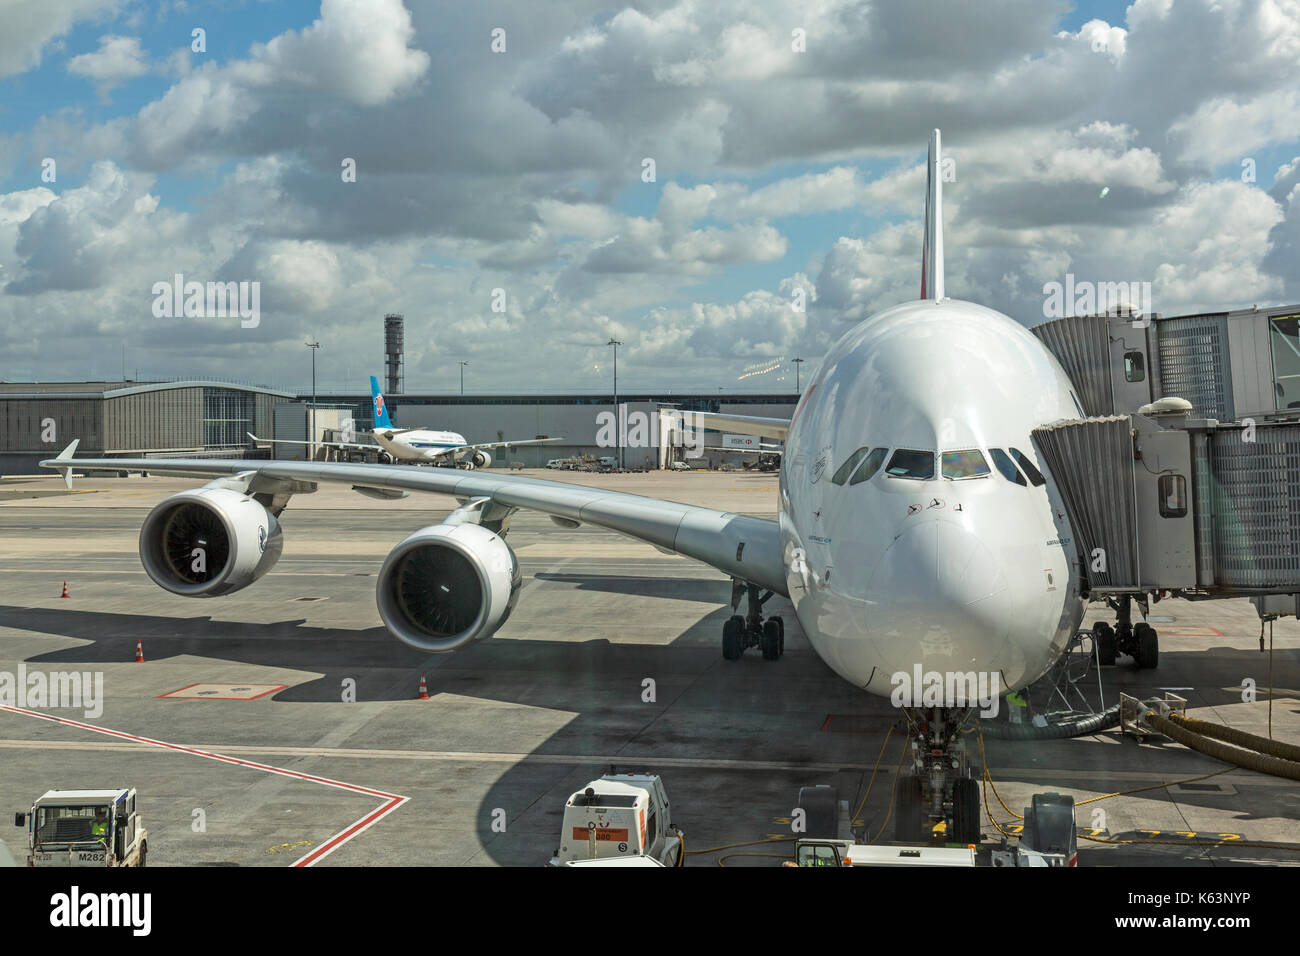 Air France Airbus A380, F-HPJC, à l'aéroport de Paris Charles de Gaulle, France. Montre le flex de la grande aile et moteurs. Banque D'Images